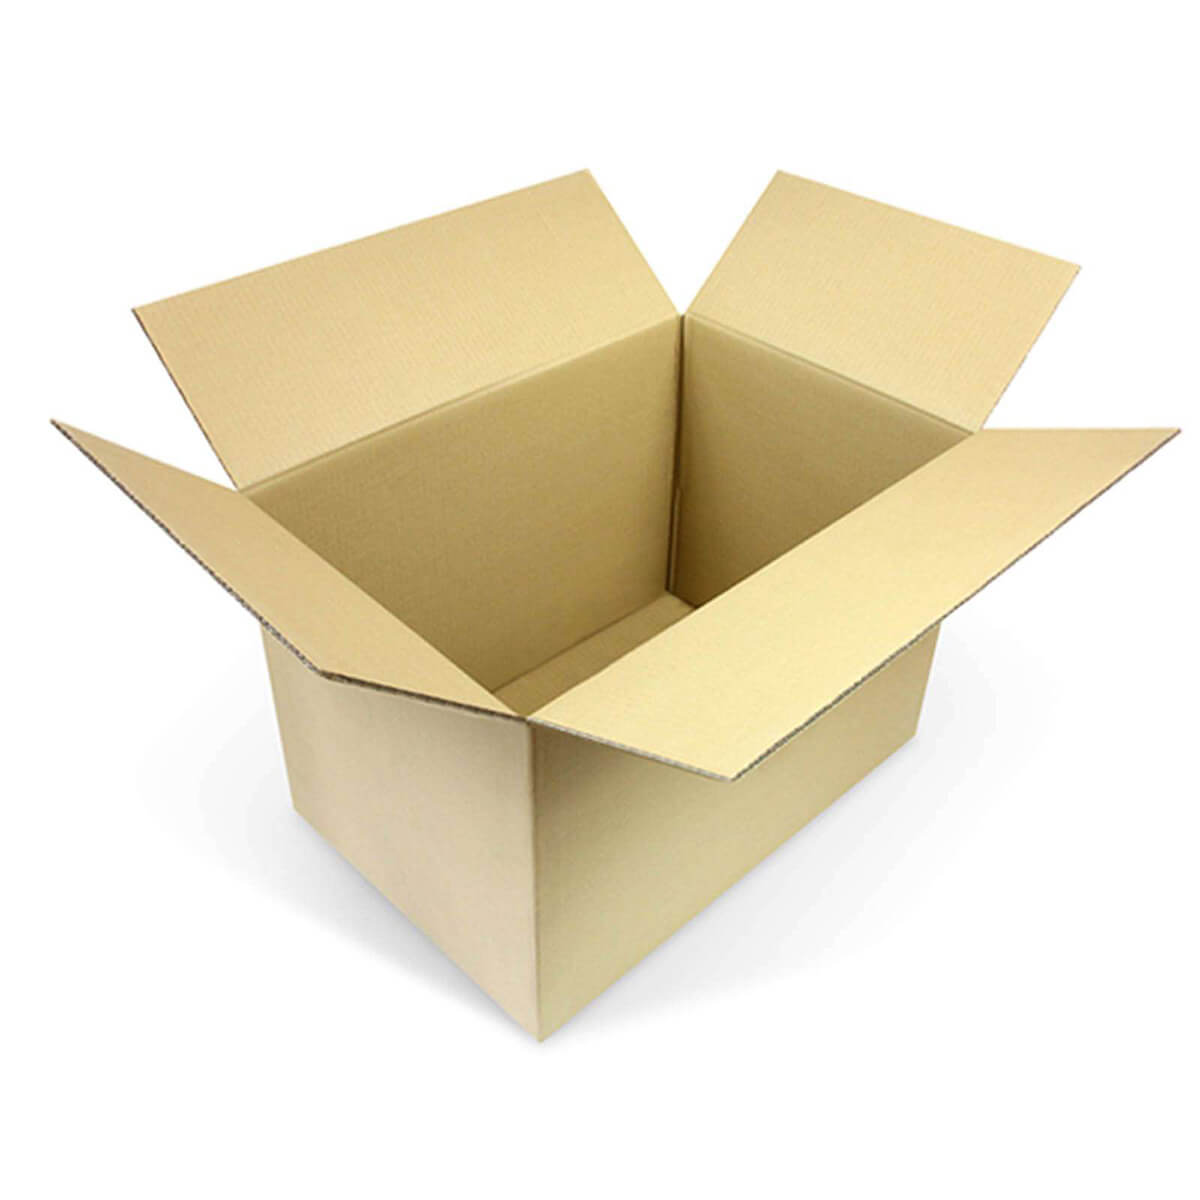 Cardboard box single wall 600x400x400 mm - KK 109